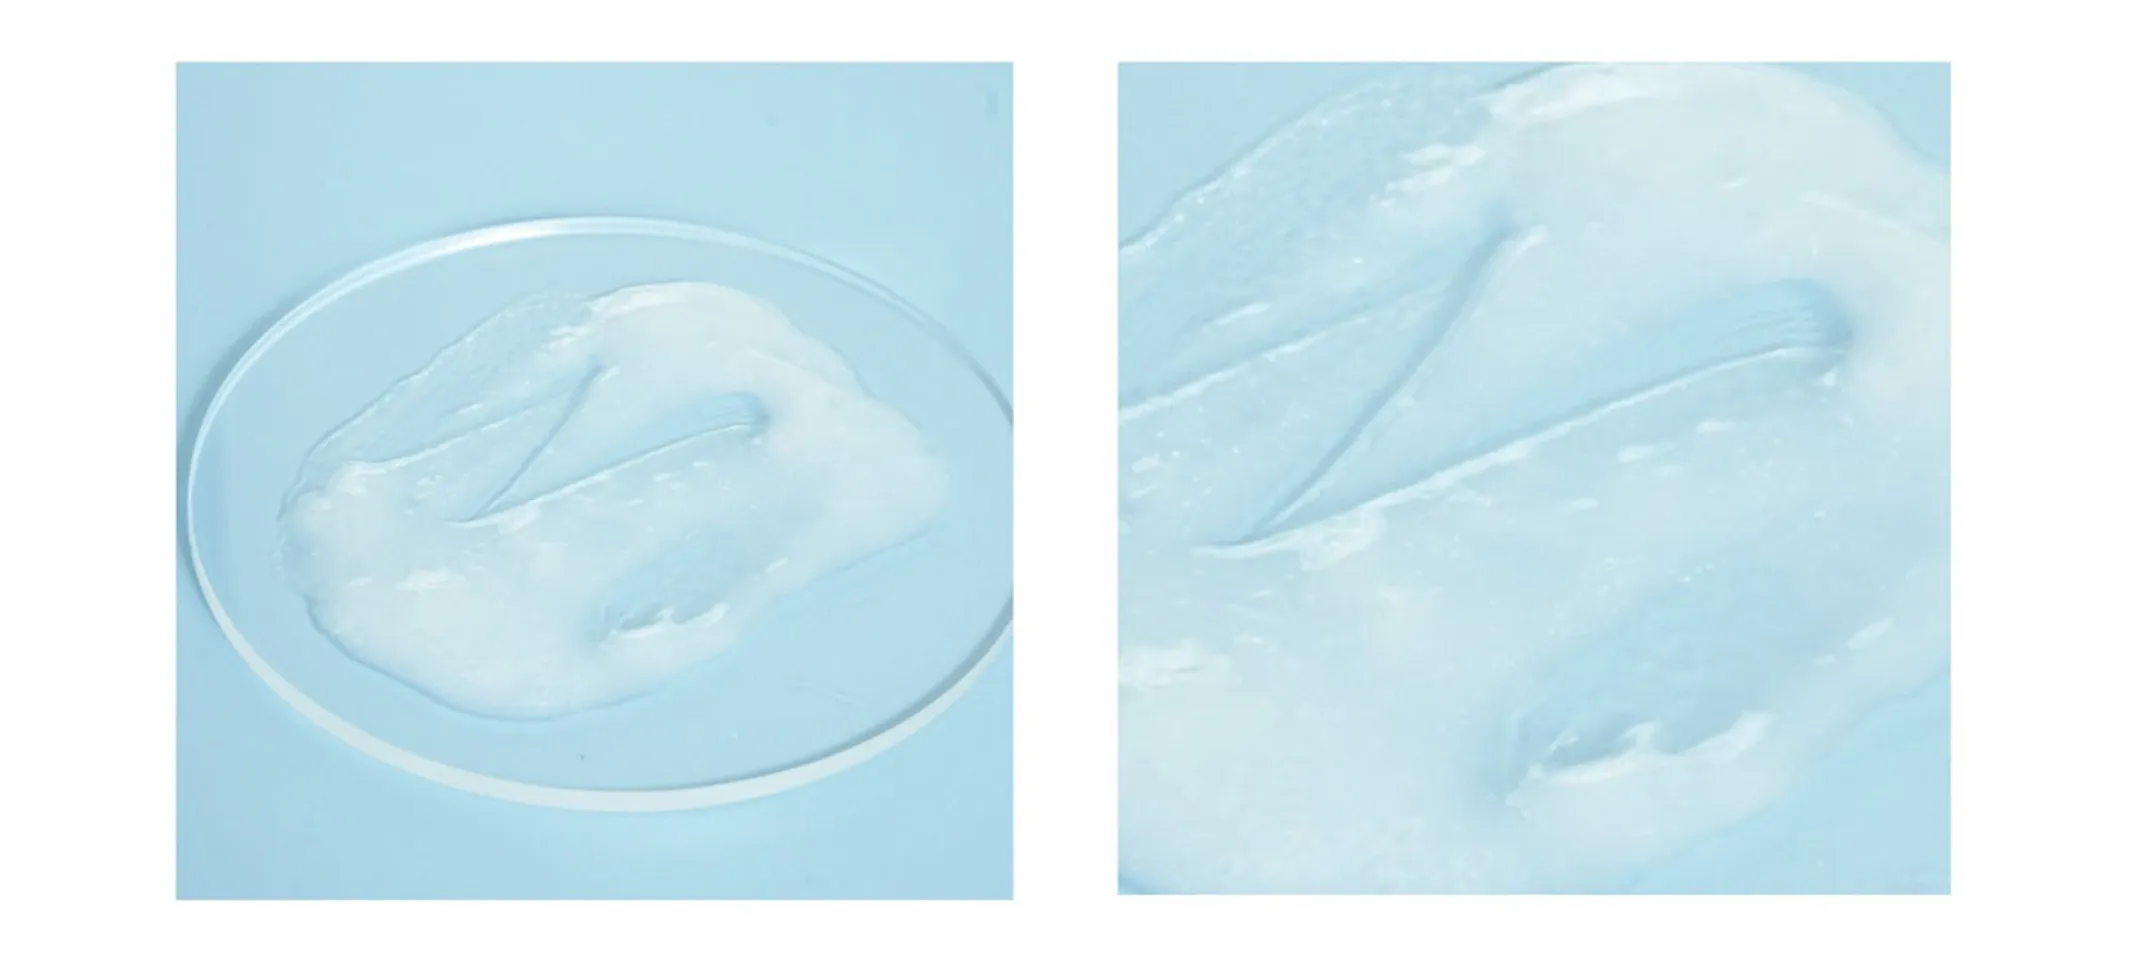 Sữa rửa mặt Physiogel Daily Moisture Therapy Dermo Cleanser không chứa xà phòng và chất tạo màu nên rất dịu nhẹ.